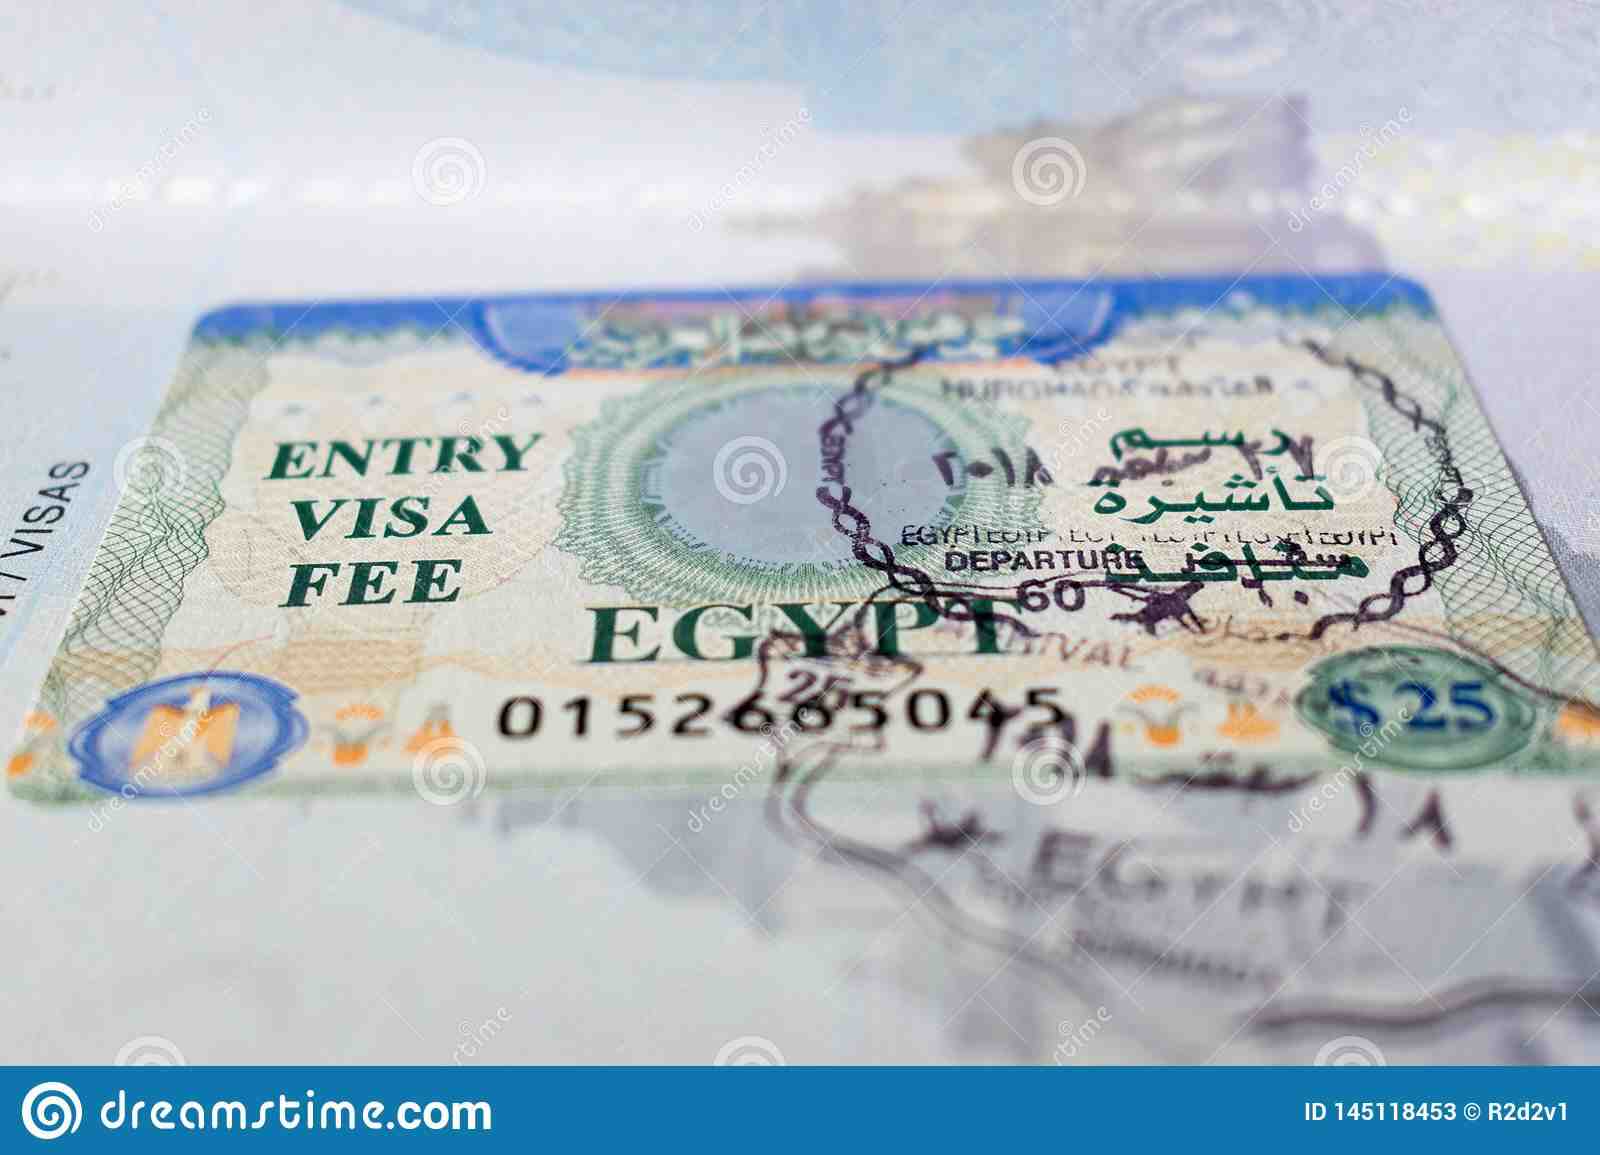 Как получить визу для поездки в Египет?